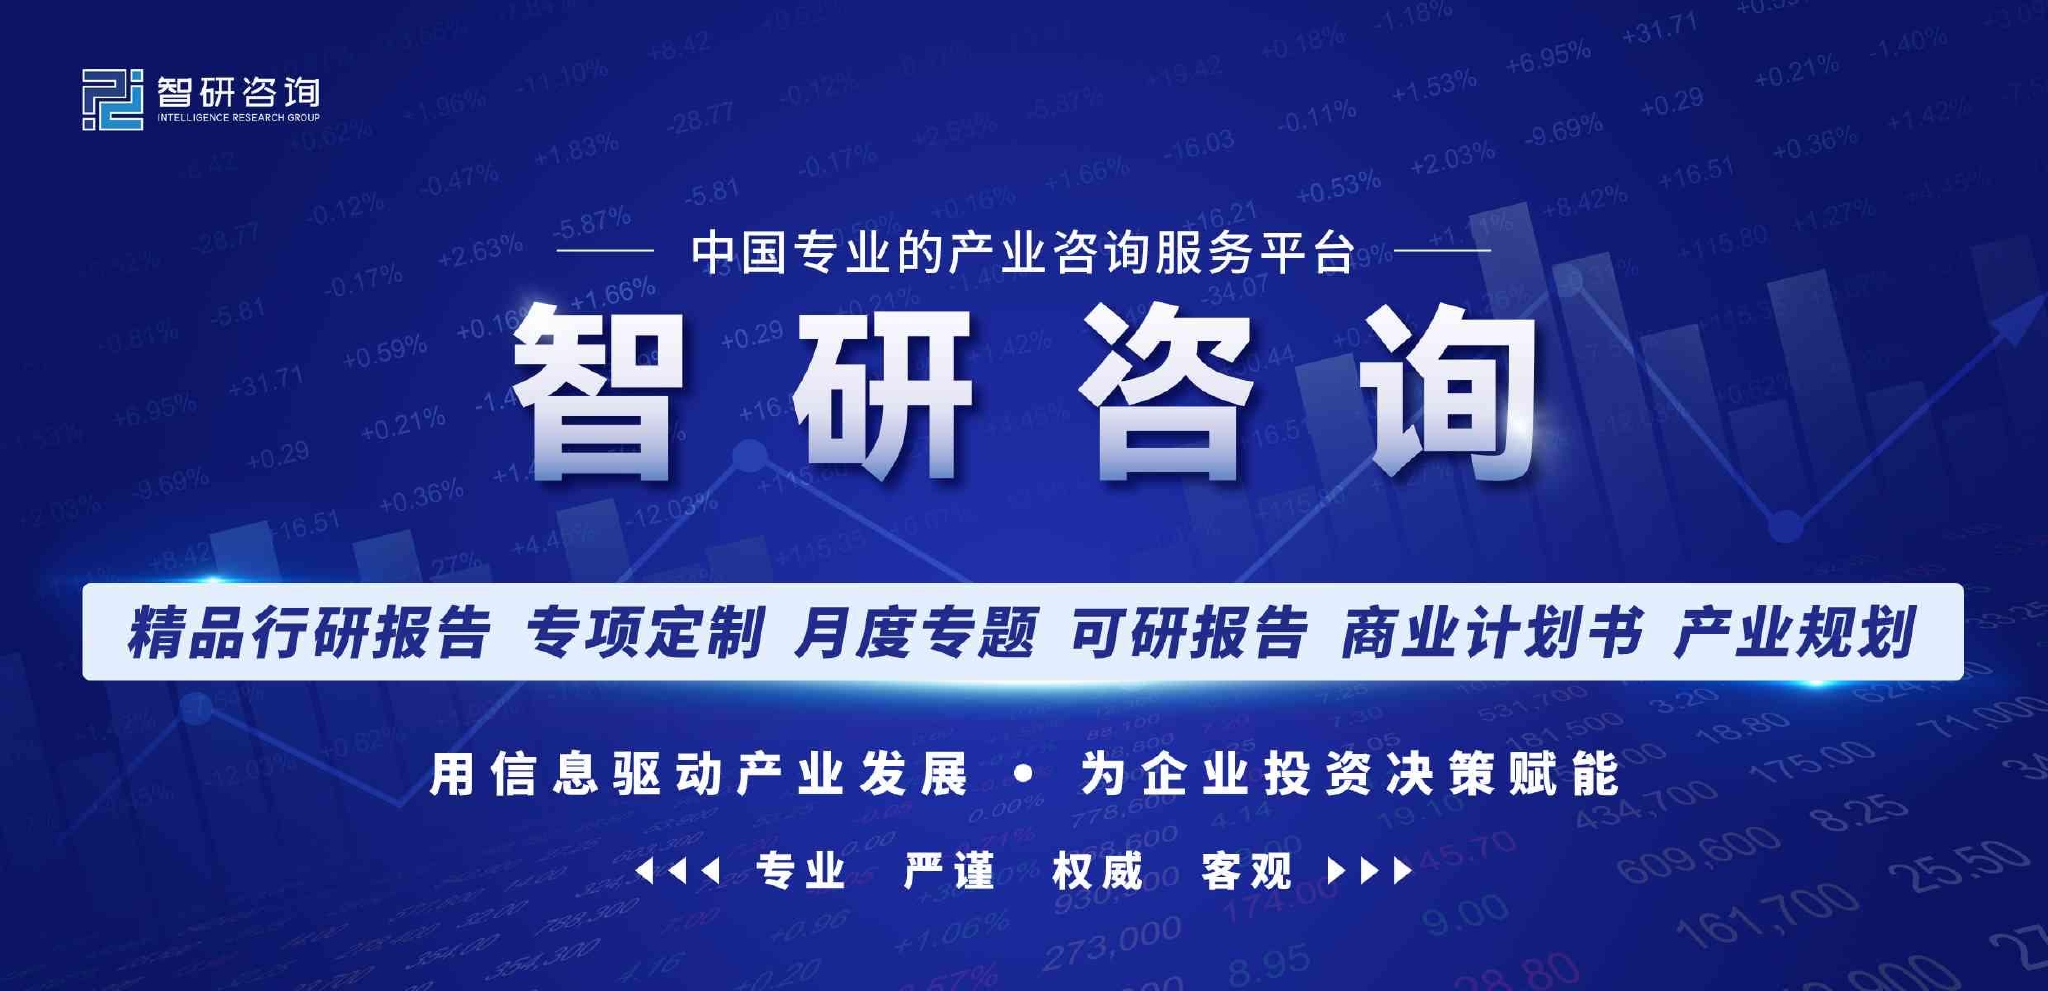 【研究报告】中国色母粒行业市场分析、前景趋势预测报告――智研咨询发布